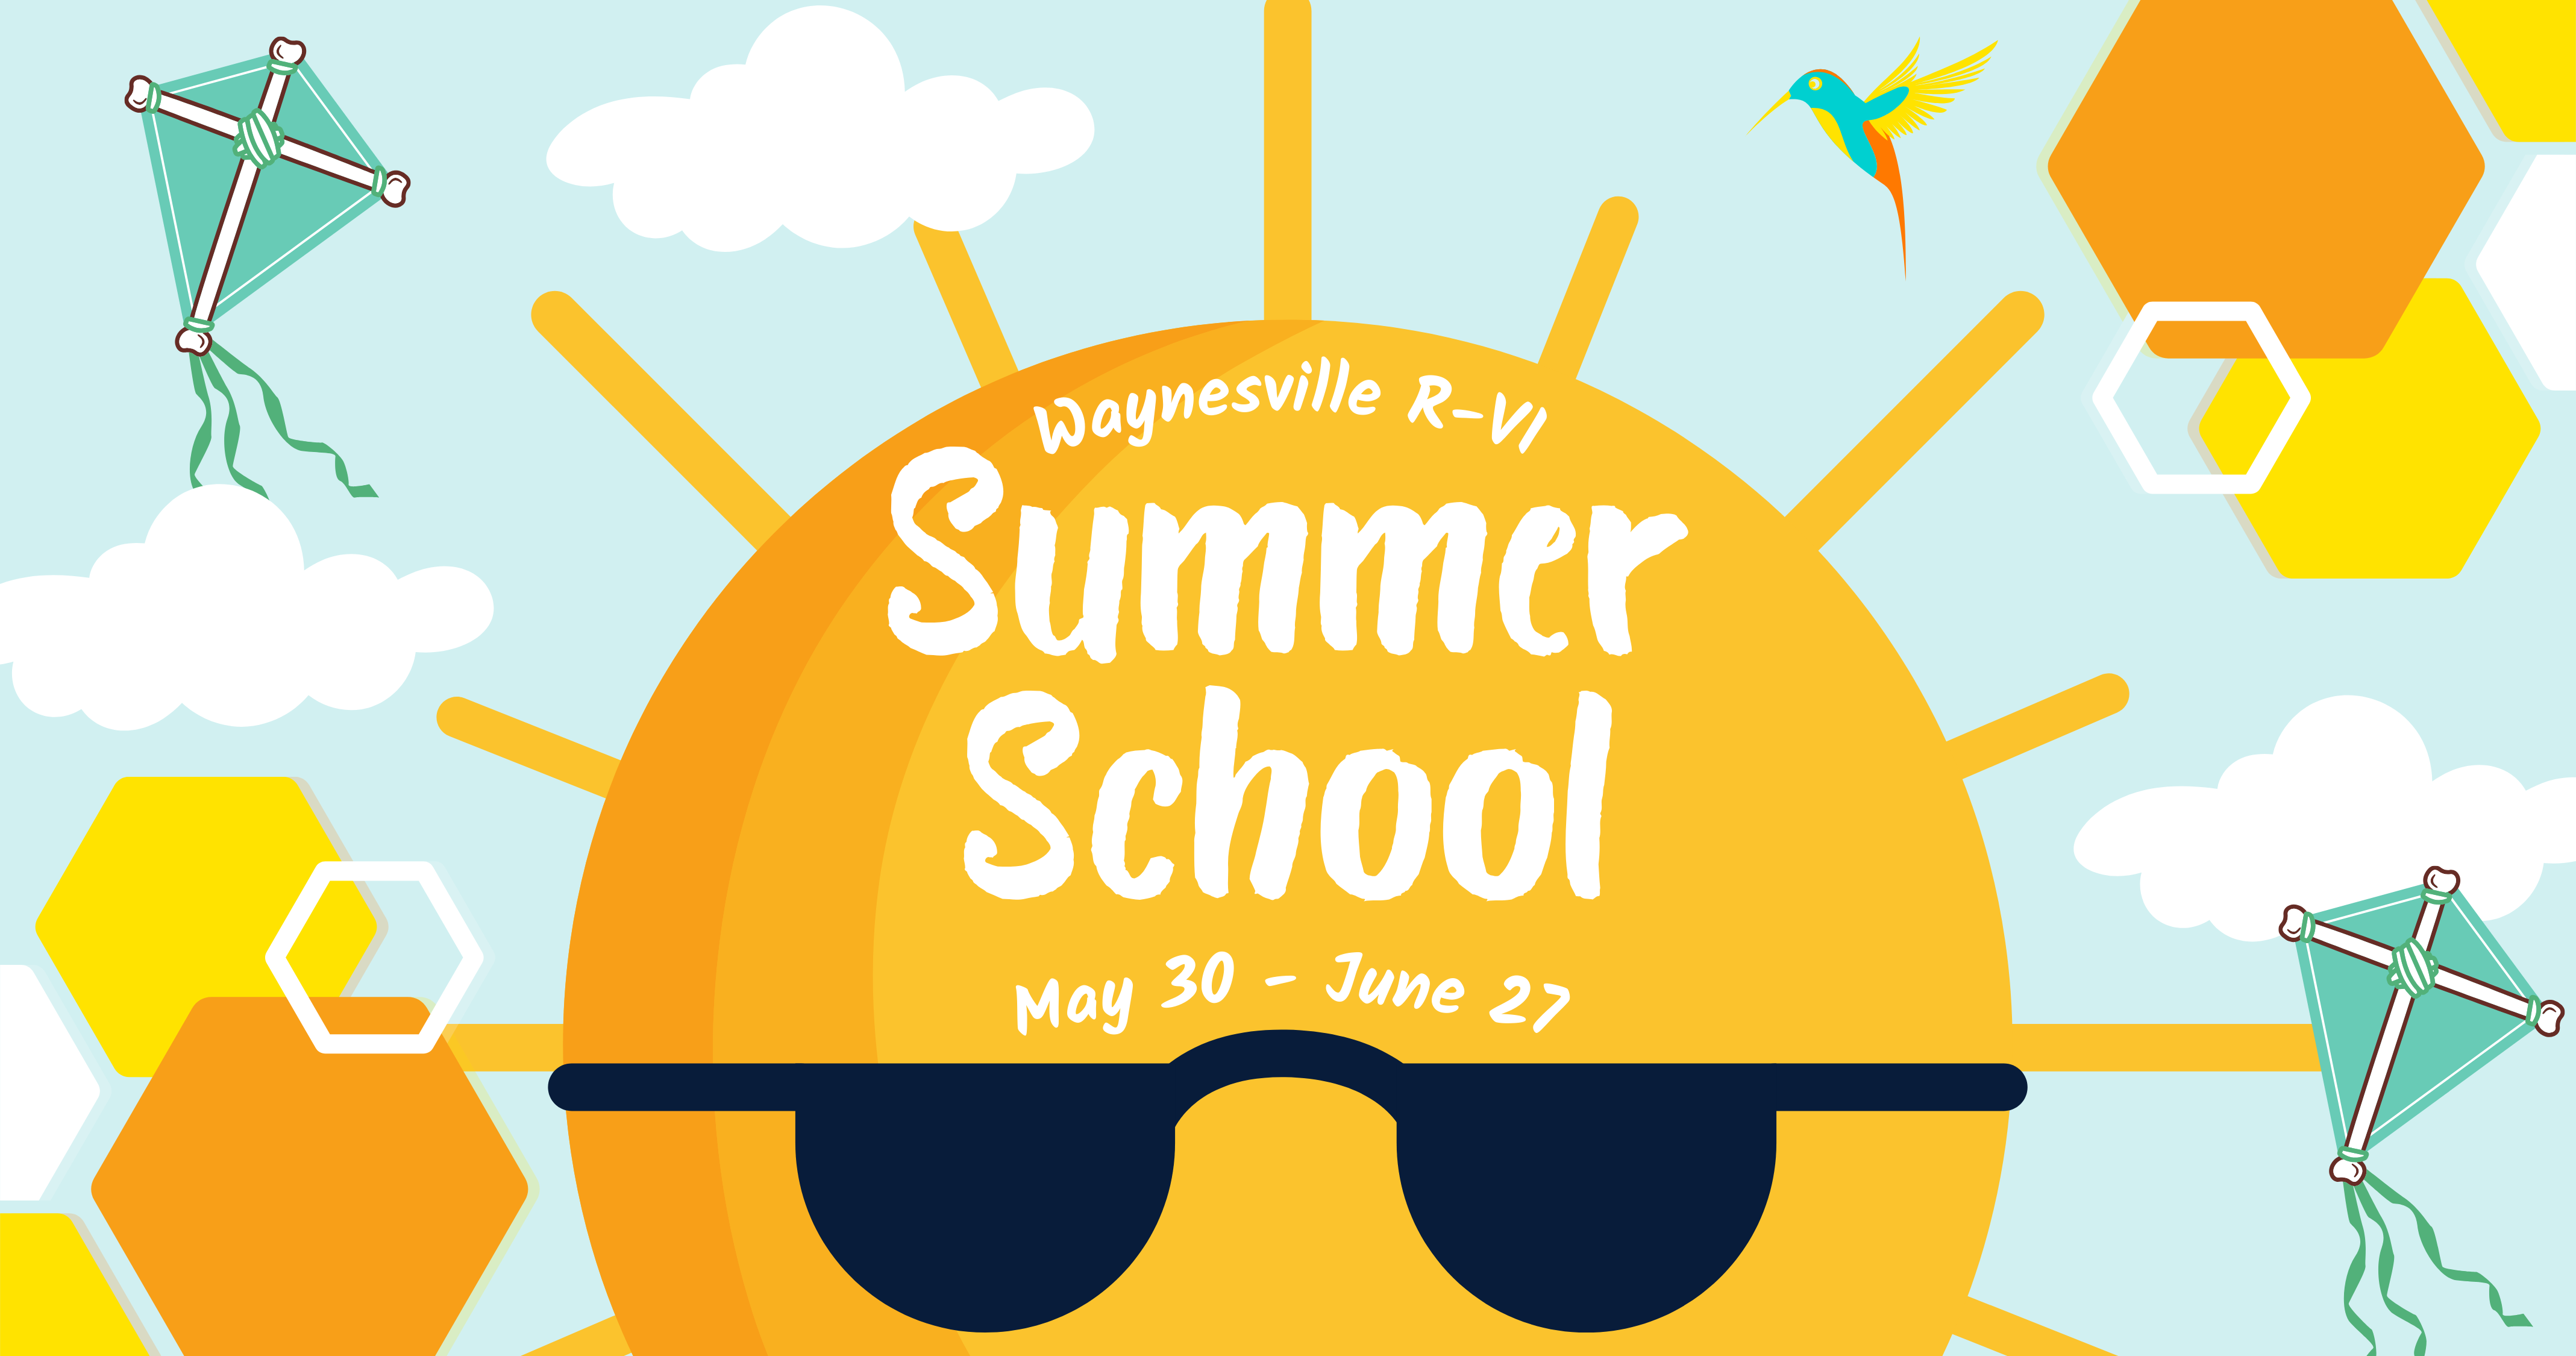 Summer School is May 30-June 27